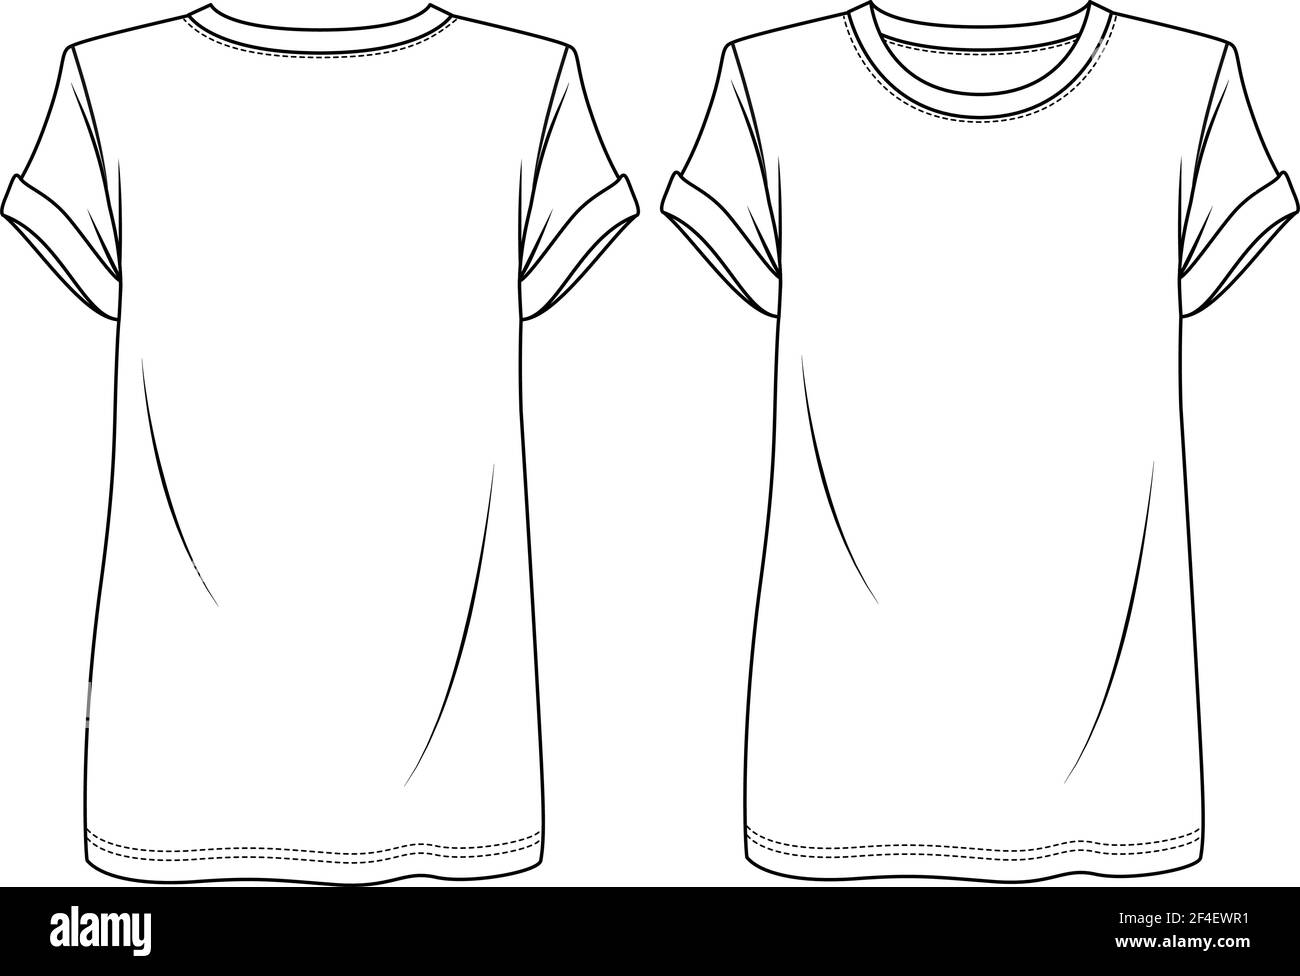 Trendige Frauen kurze Ärmel T-Shirt mit gepolsterten Schultern Mode flach Skizze Vorlage. Mädchen Tunika Länge T-Shirt Technische Mode Illustration Stock Vektor